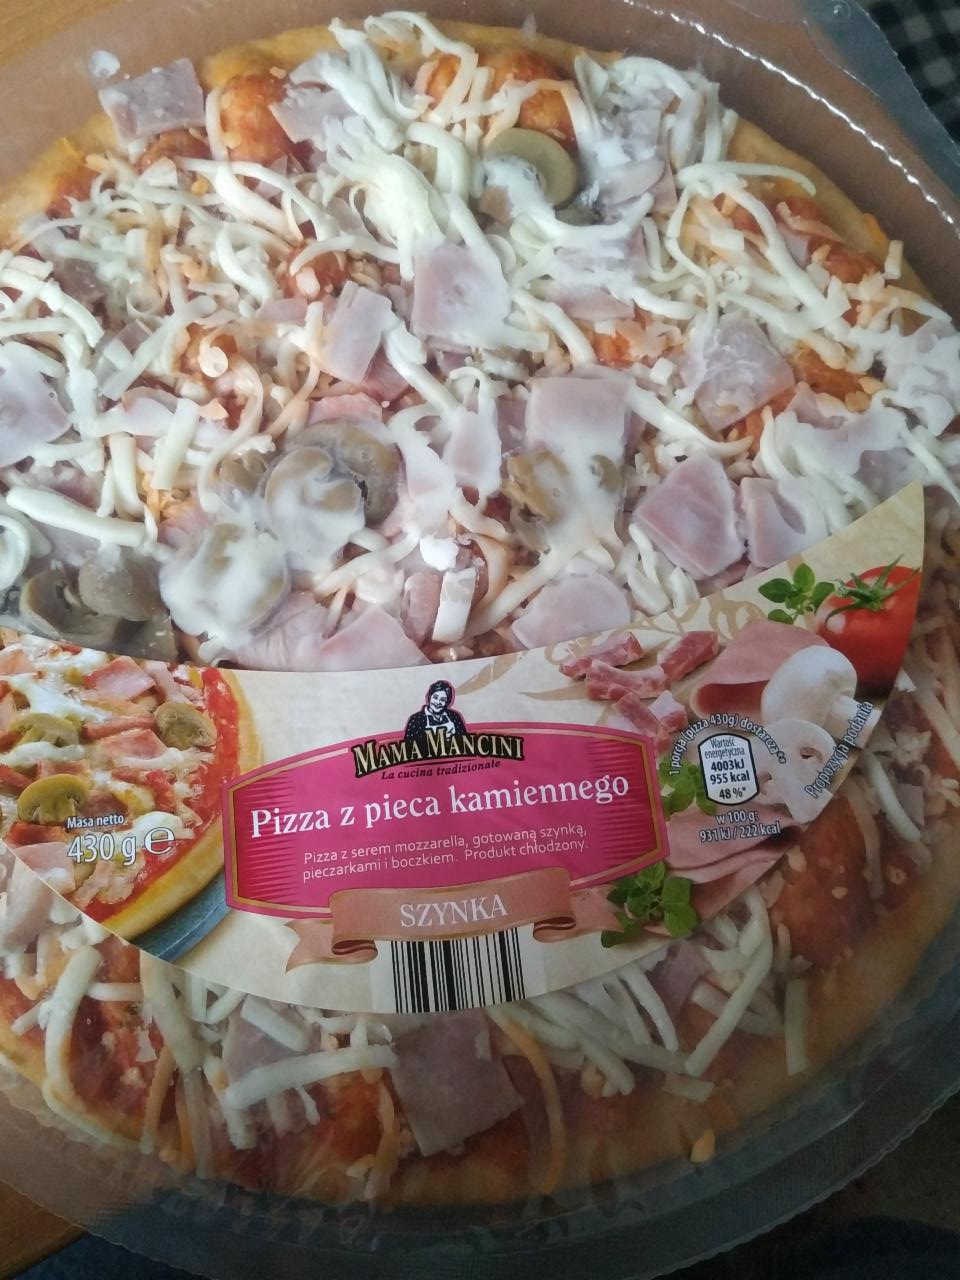 Фото - pizza szynka пицца с ветчиной Mama mancini